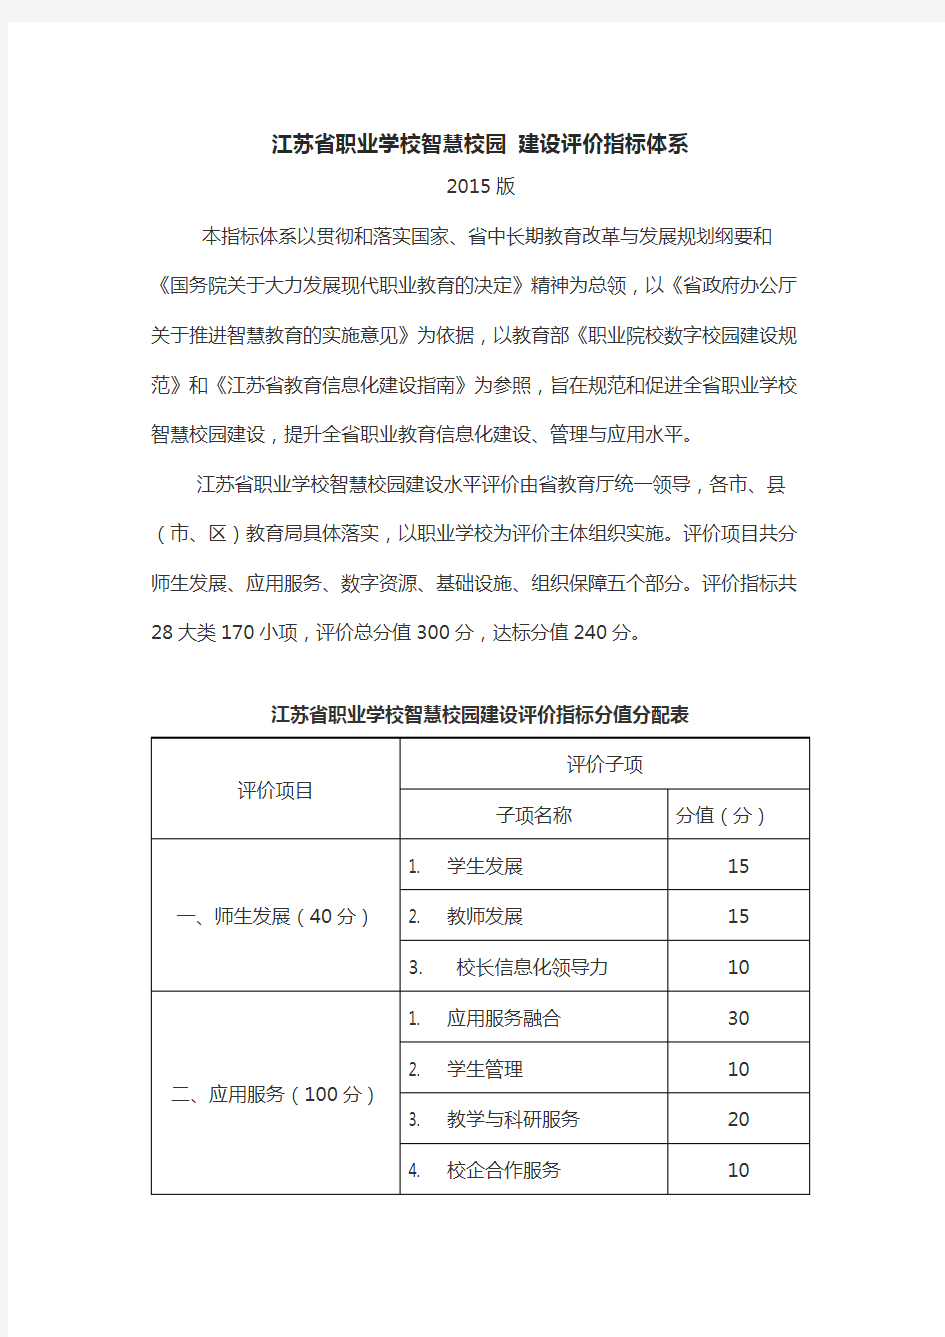 江苏省职业学校智慧校园-建设评价指标体系